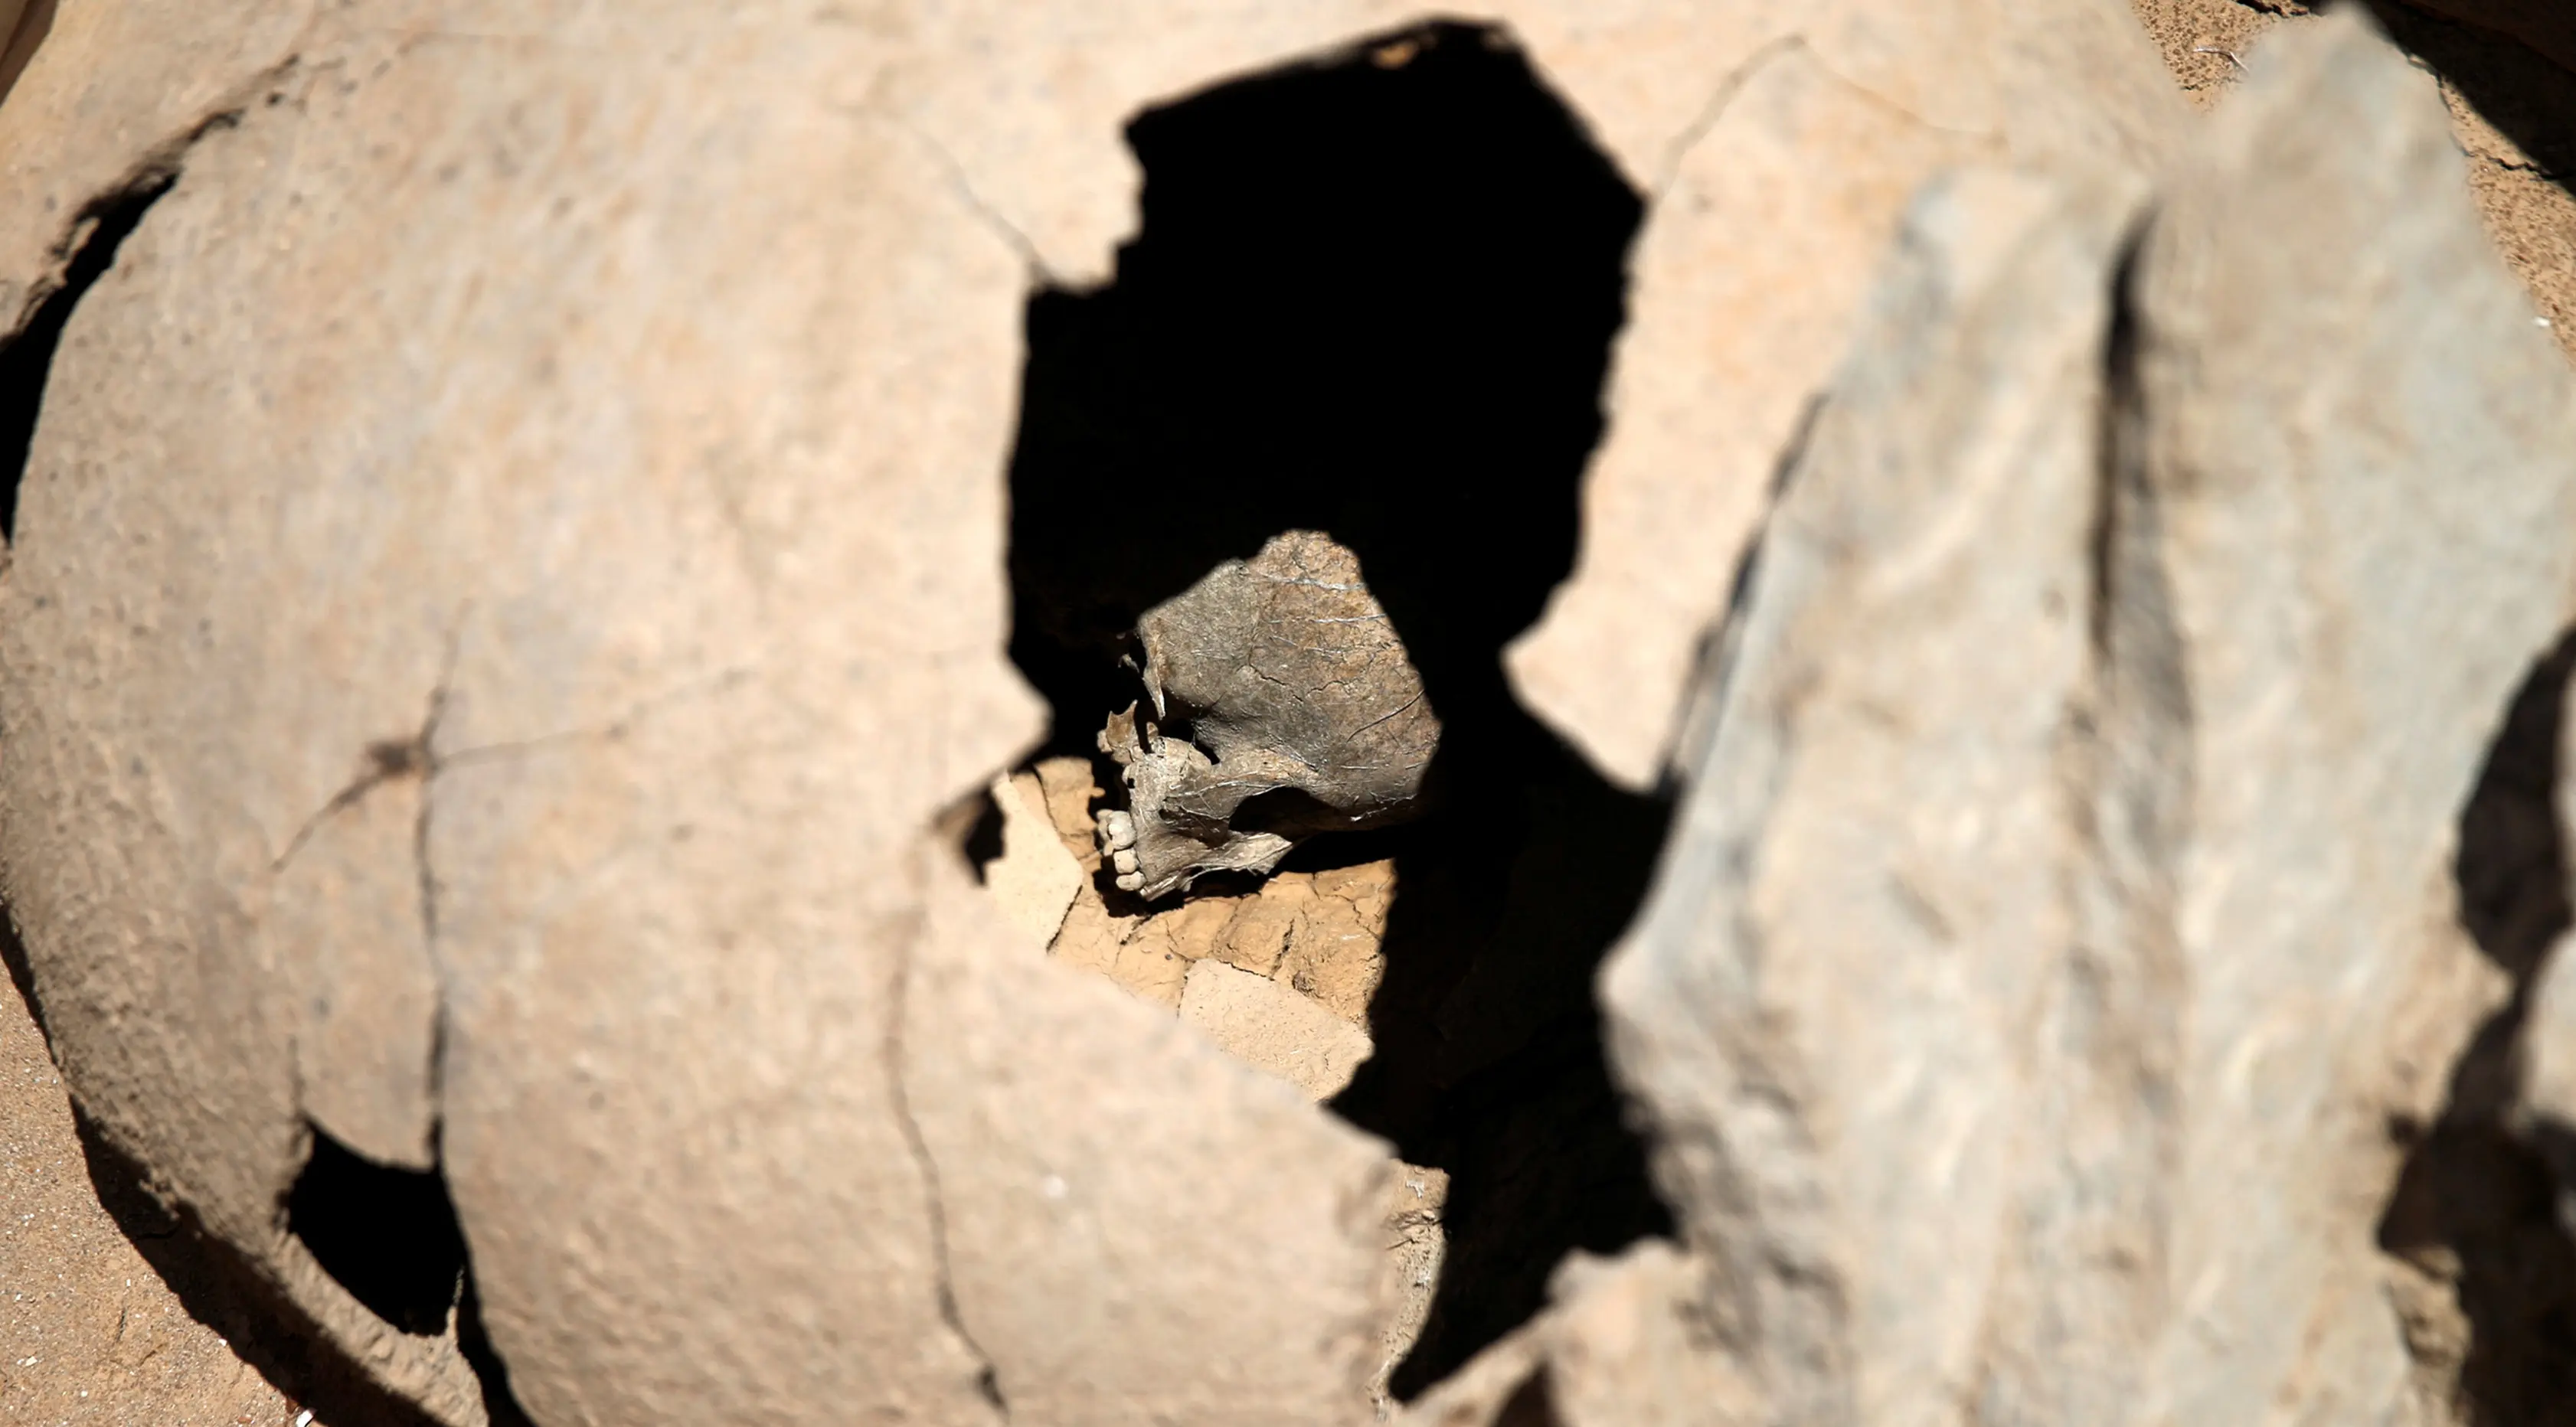 Tengkorak seorang anak terlihat dalam sebuah guci tanah liat, di pemakaman Falyron Delta kuno di Athena, Yunani, 27 Juli 2016. Diduga ini merupakan bukti tradisi Yunani Kuno dalam menguburkan anak-anak dan bayi laki-laki. (REUTERS/Alkis Konstantinidis)